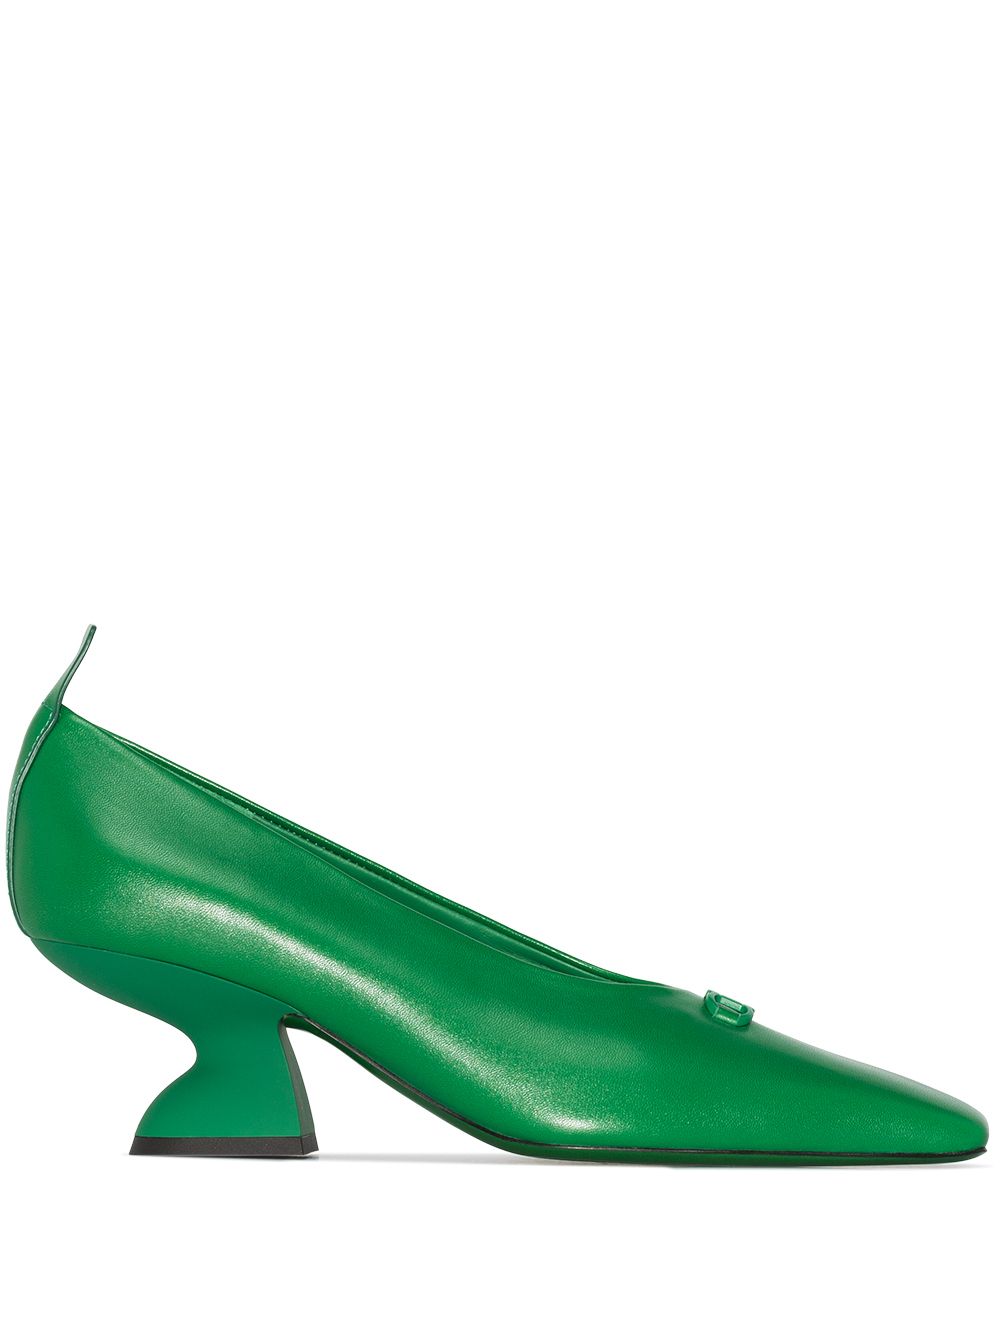 фото Salvatore ferragamo туфли-лодочки на скульптурном каблуке